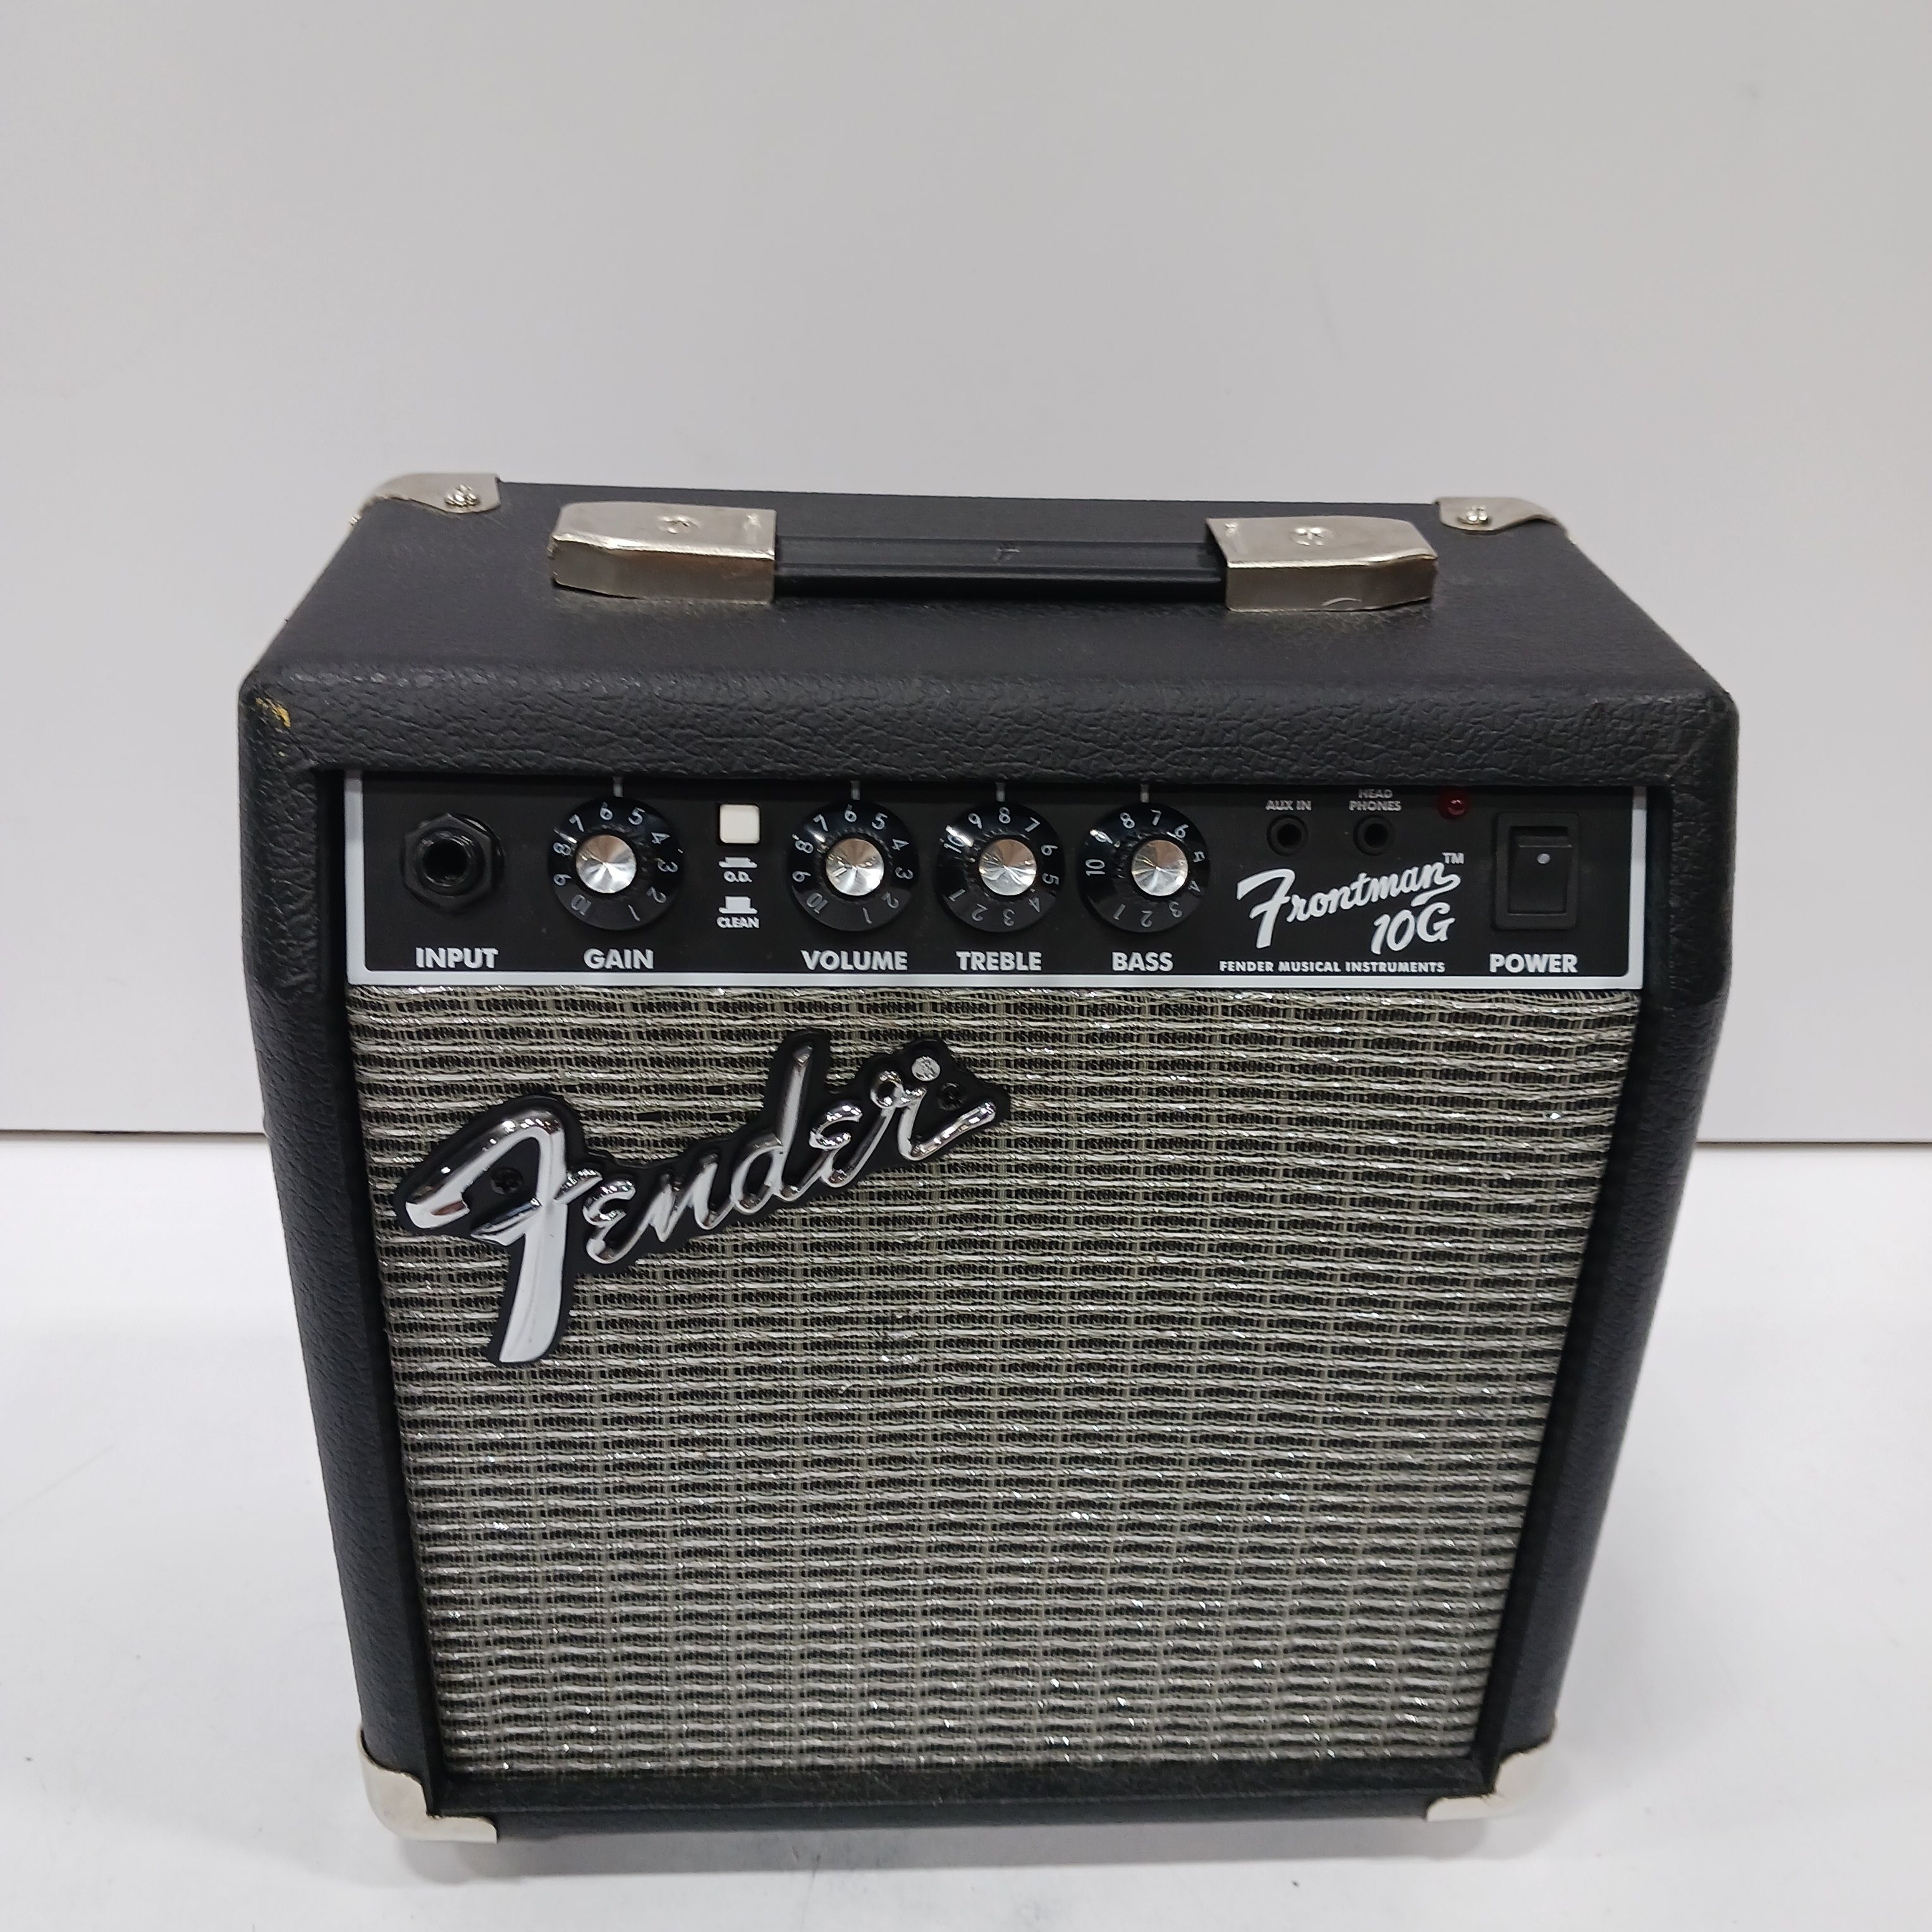 Fender Frontman 10G Electric Guitar Amplifier, Black, Type PR 357